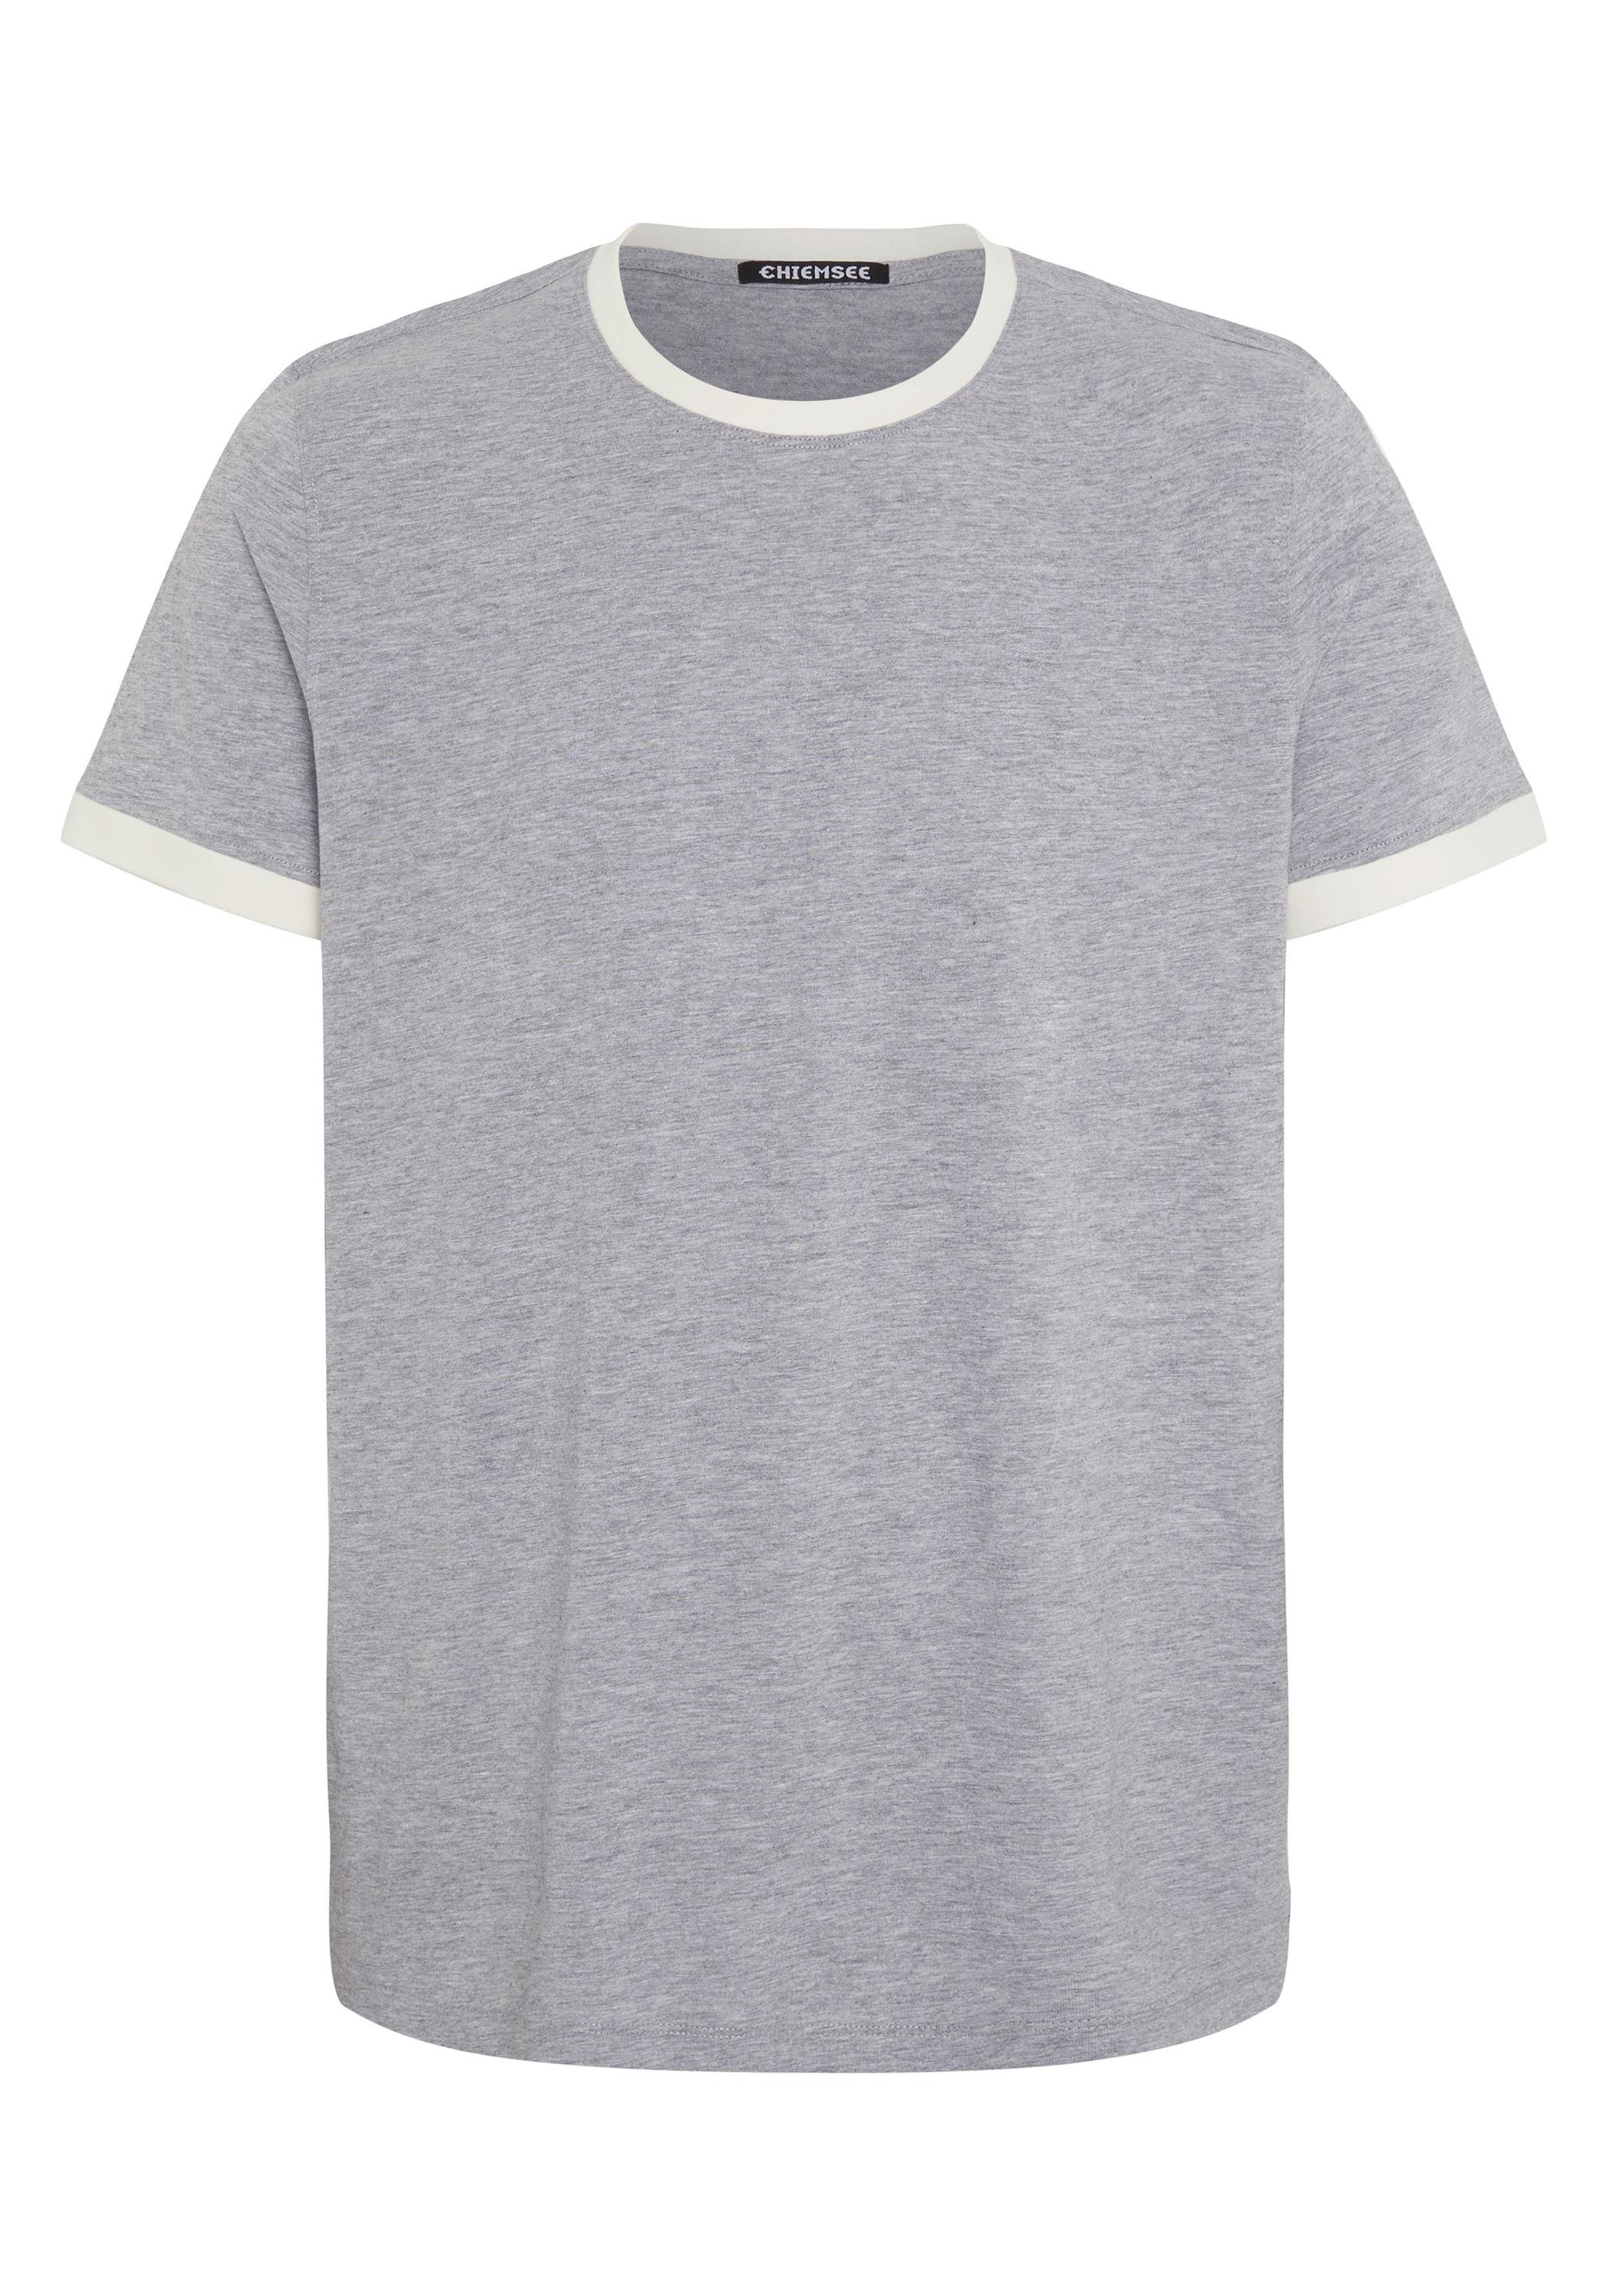 Shop T-Shirt 17-4402M Herren Melange Chiemsee SportScheck Shirt Online Neutral kaufen im von Gray